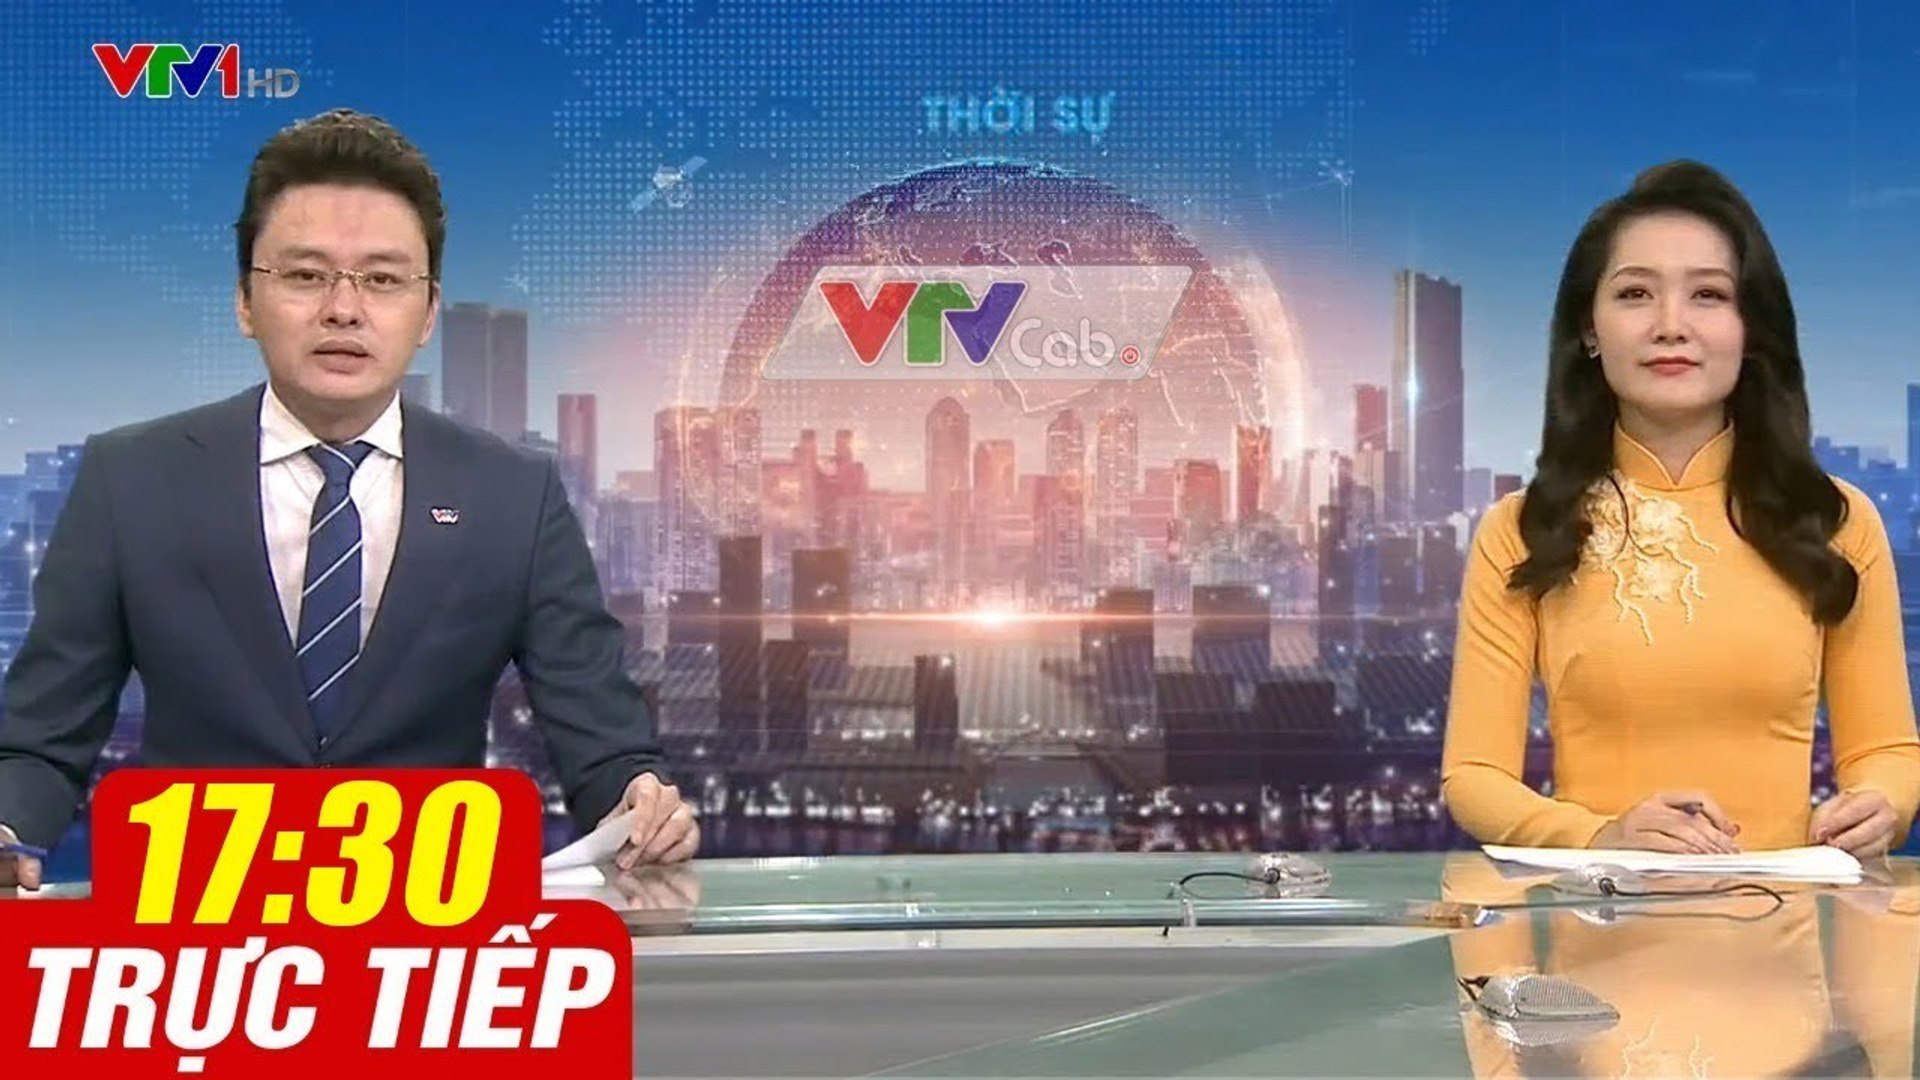 Trực Tiếp VIỆT NAM HÔM NAY 17h30 ngày 20.09.2020  Tin tức thời sự VTV1 mới nhất hôm nay